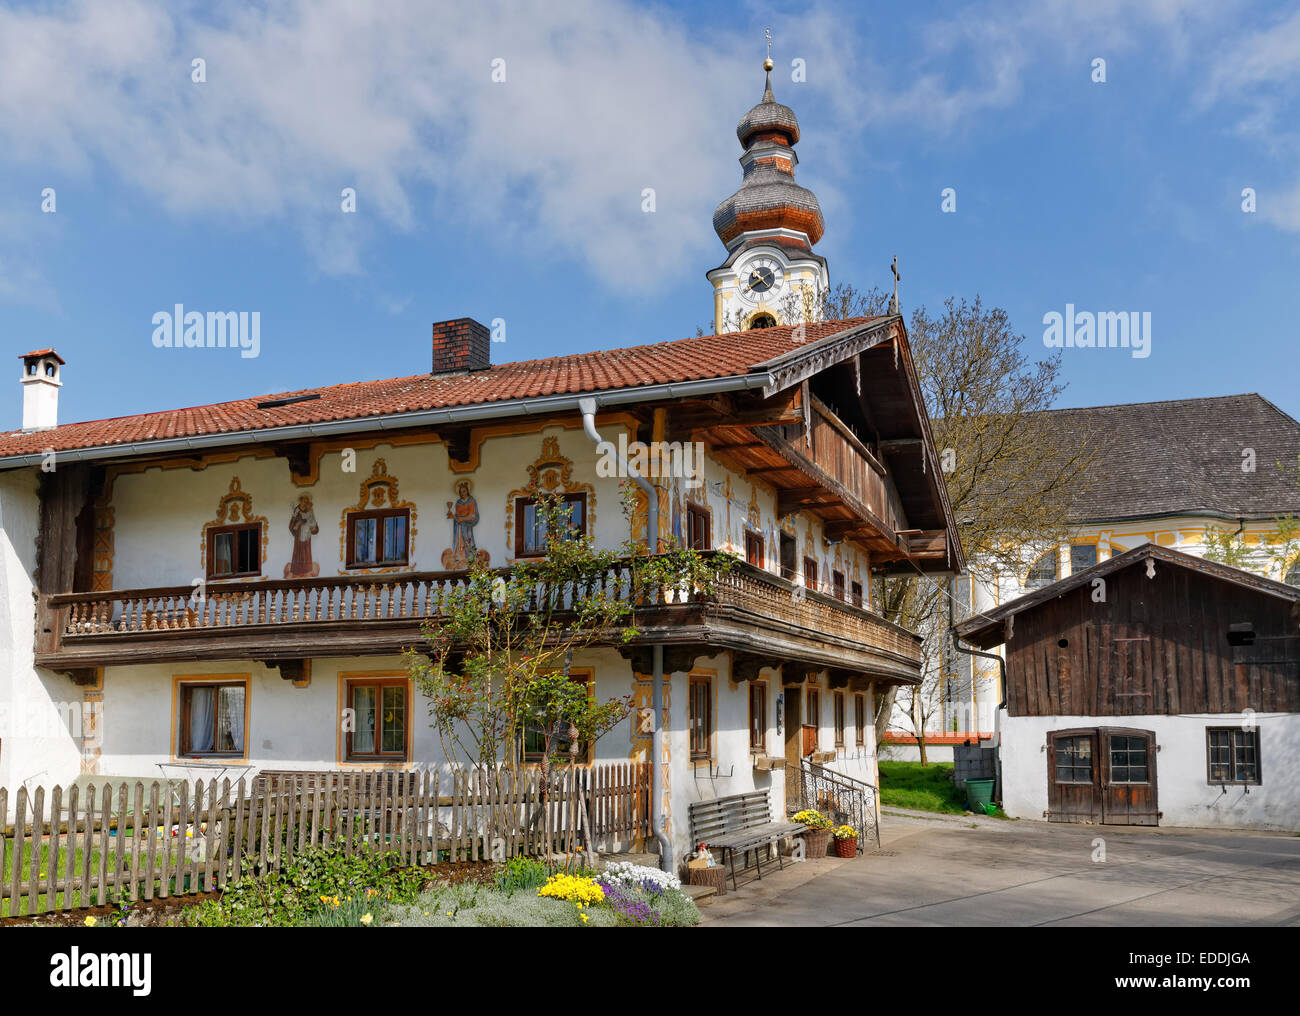 In Germania, in Baviera, Berbling, chiesa e casa colonica con pittura murale Foto Stock